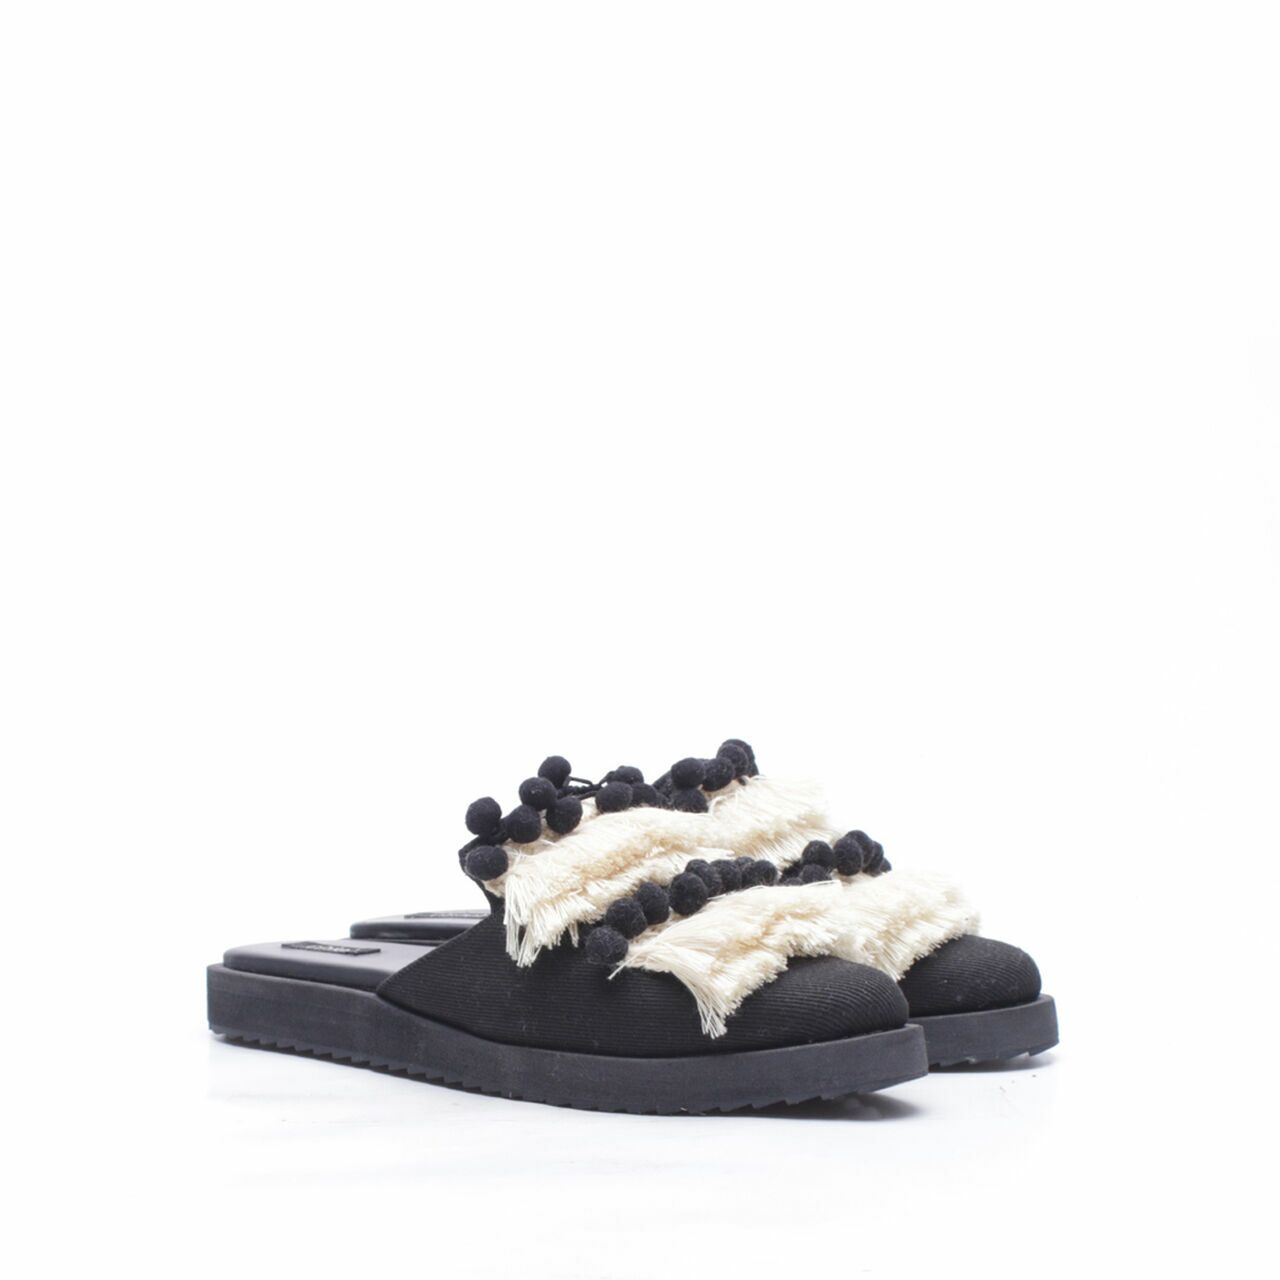 Chiel Black & Cream Sandals